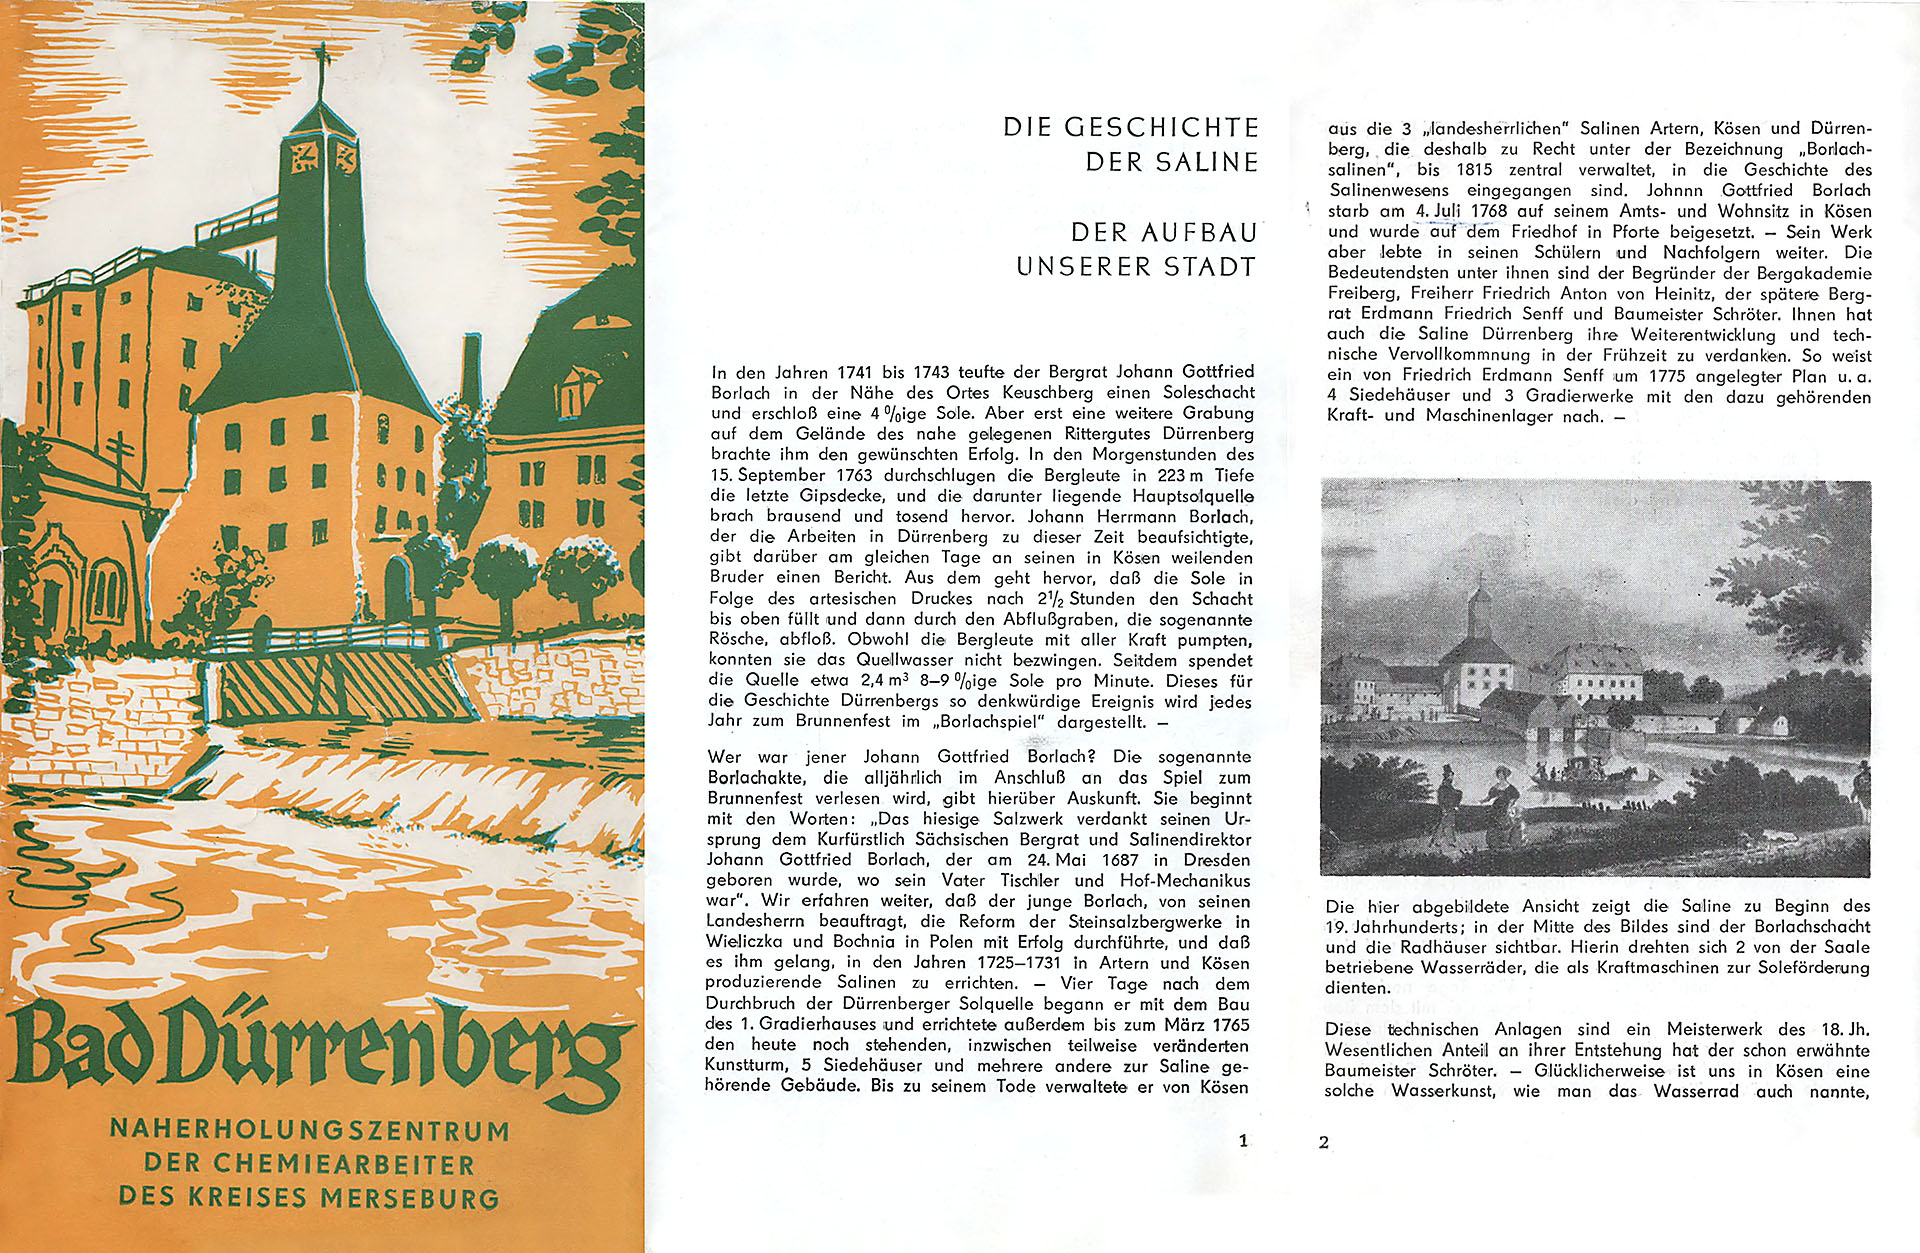 Bad Dürrenberg - Naherholungszentrum der Chemiearbeiter des Kreises Merseburg